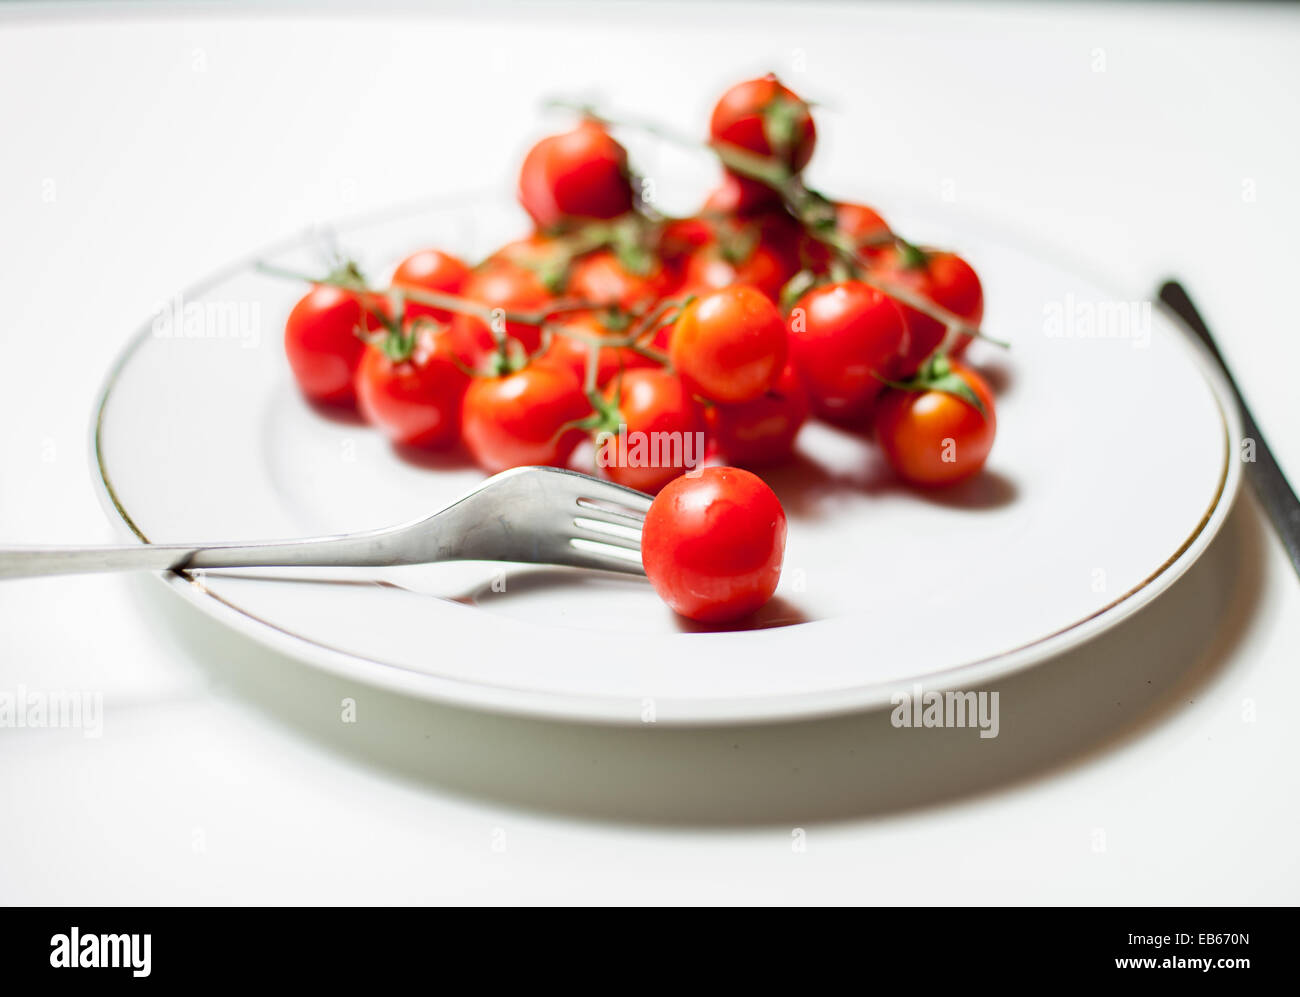 Dettaglio di un crudo fresco di pomodoro di Pachino classe su una piastra bianca con sfondo bianco con una forchetta e un coltello Foto Stock